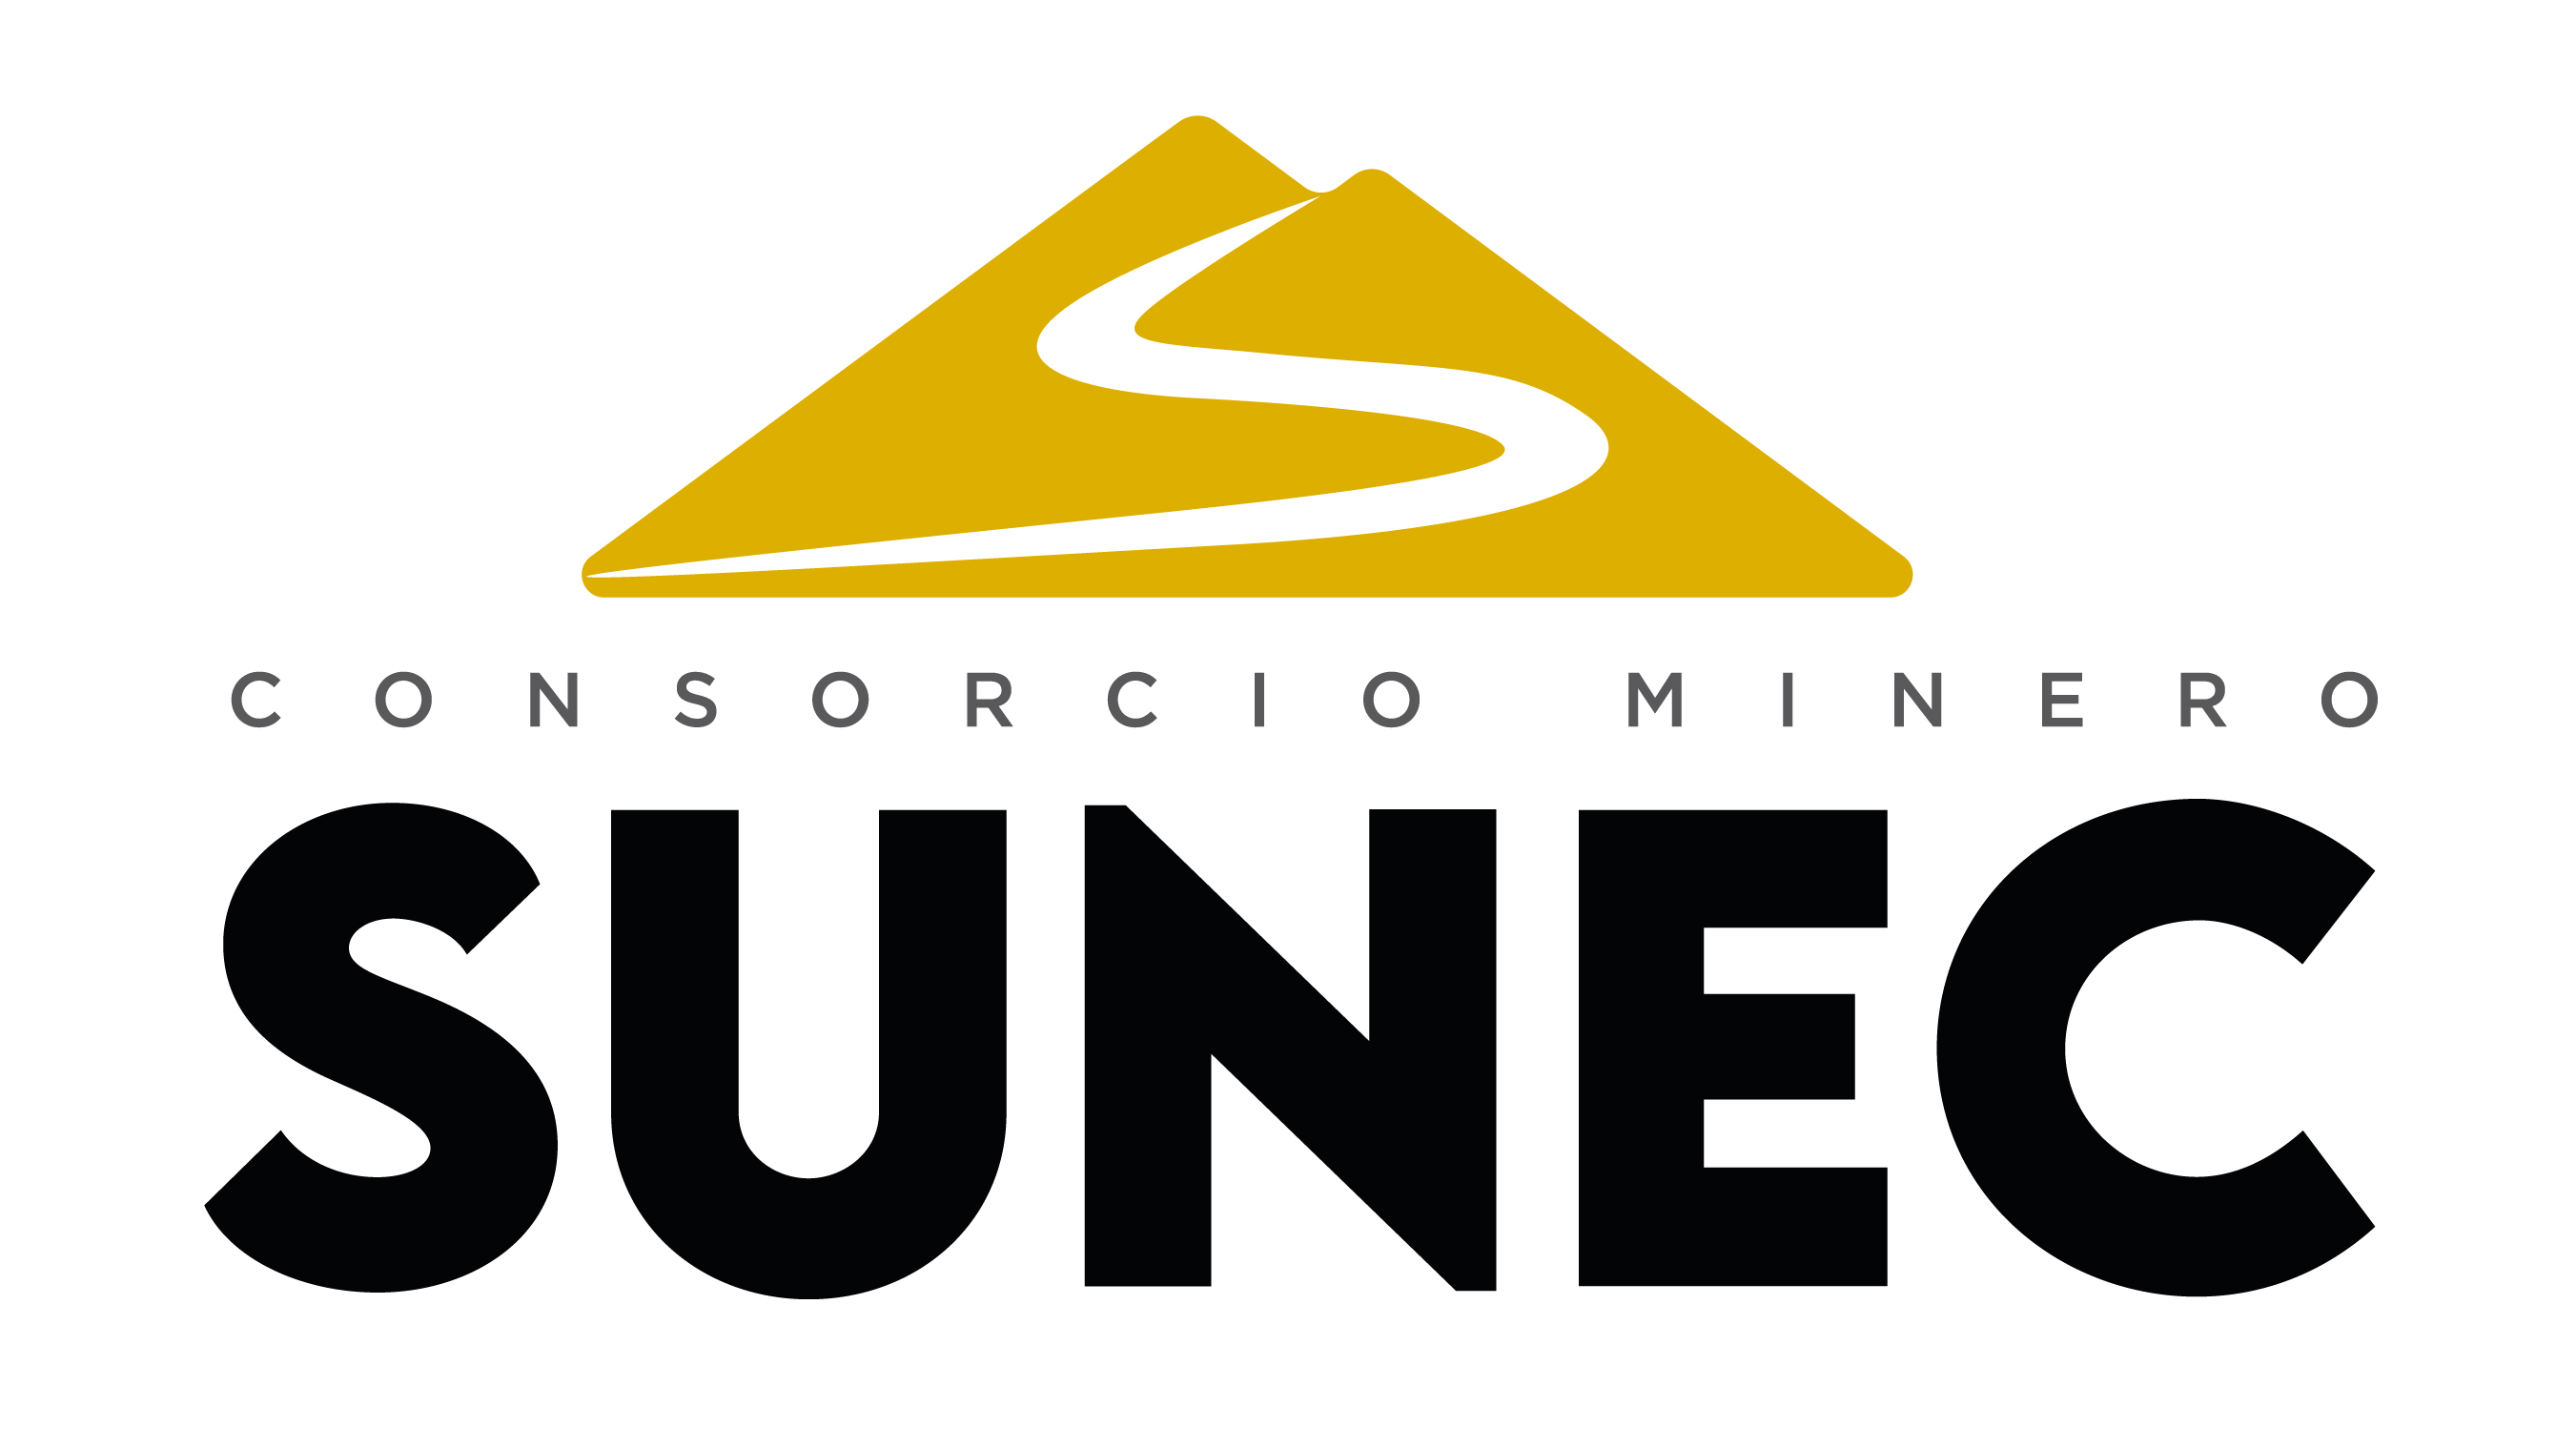 CONSORCIO MINERO SUNEC S.A.C.